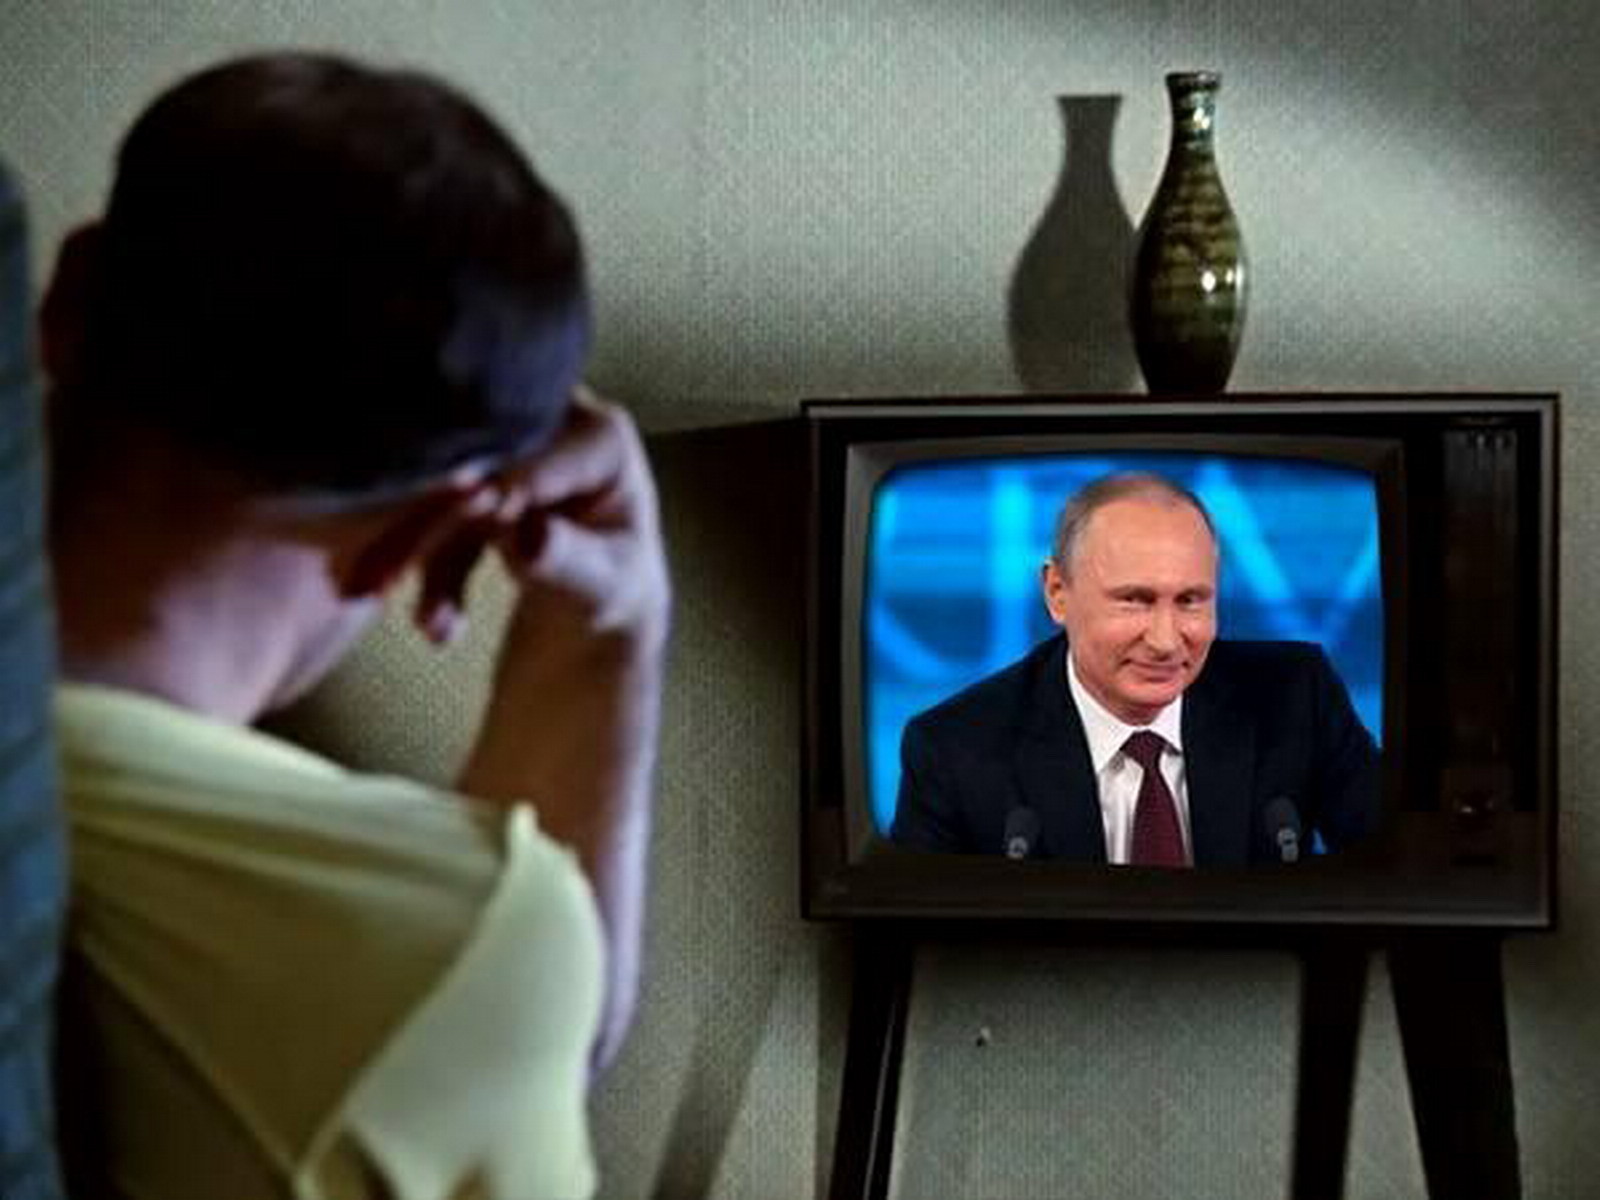 Новости про телевизоры. Человек телевизор. Стырйтелефизор с Путиным. Телевидение политика.